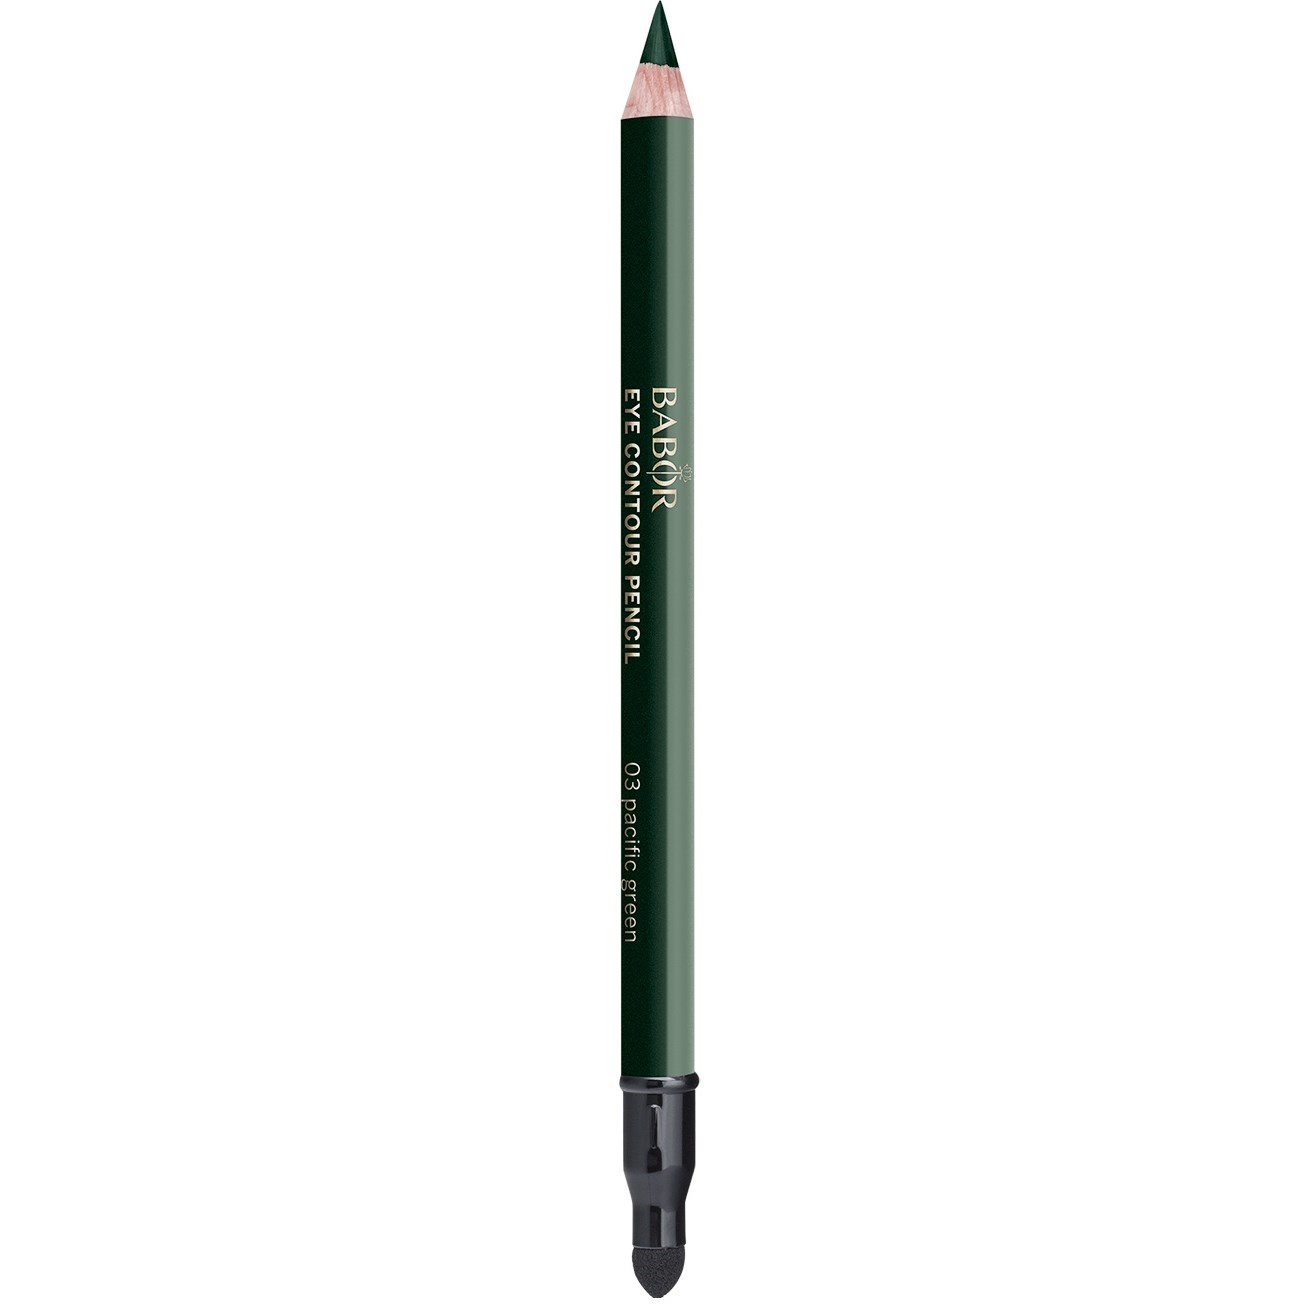 Bilde av Babor Makeup Eye Contour Pencil 03 Pacific Green